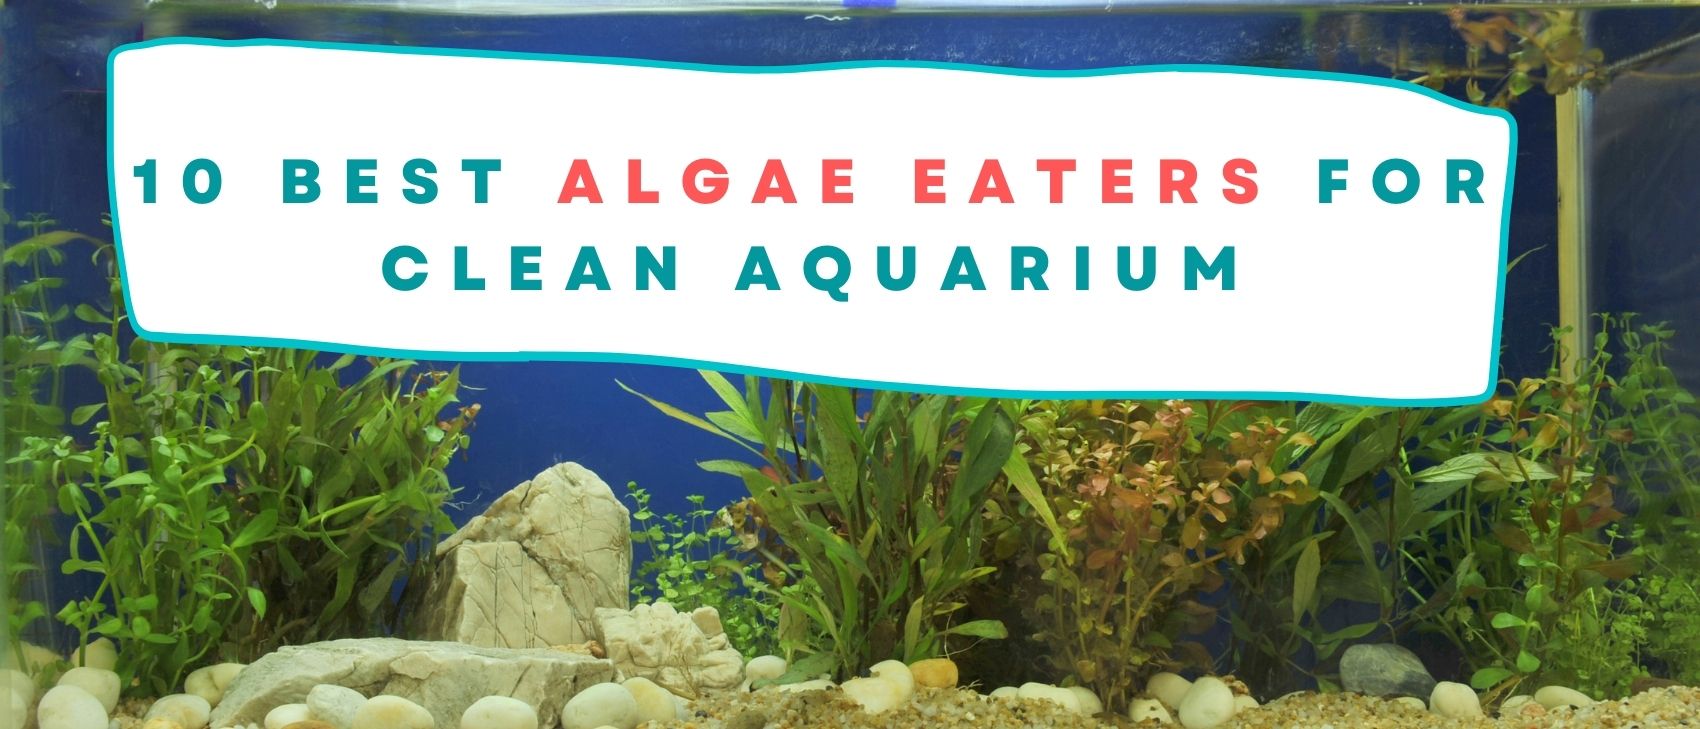 Best Algae Eaters